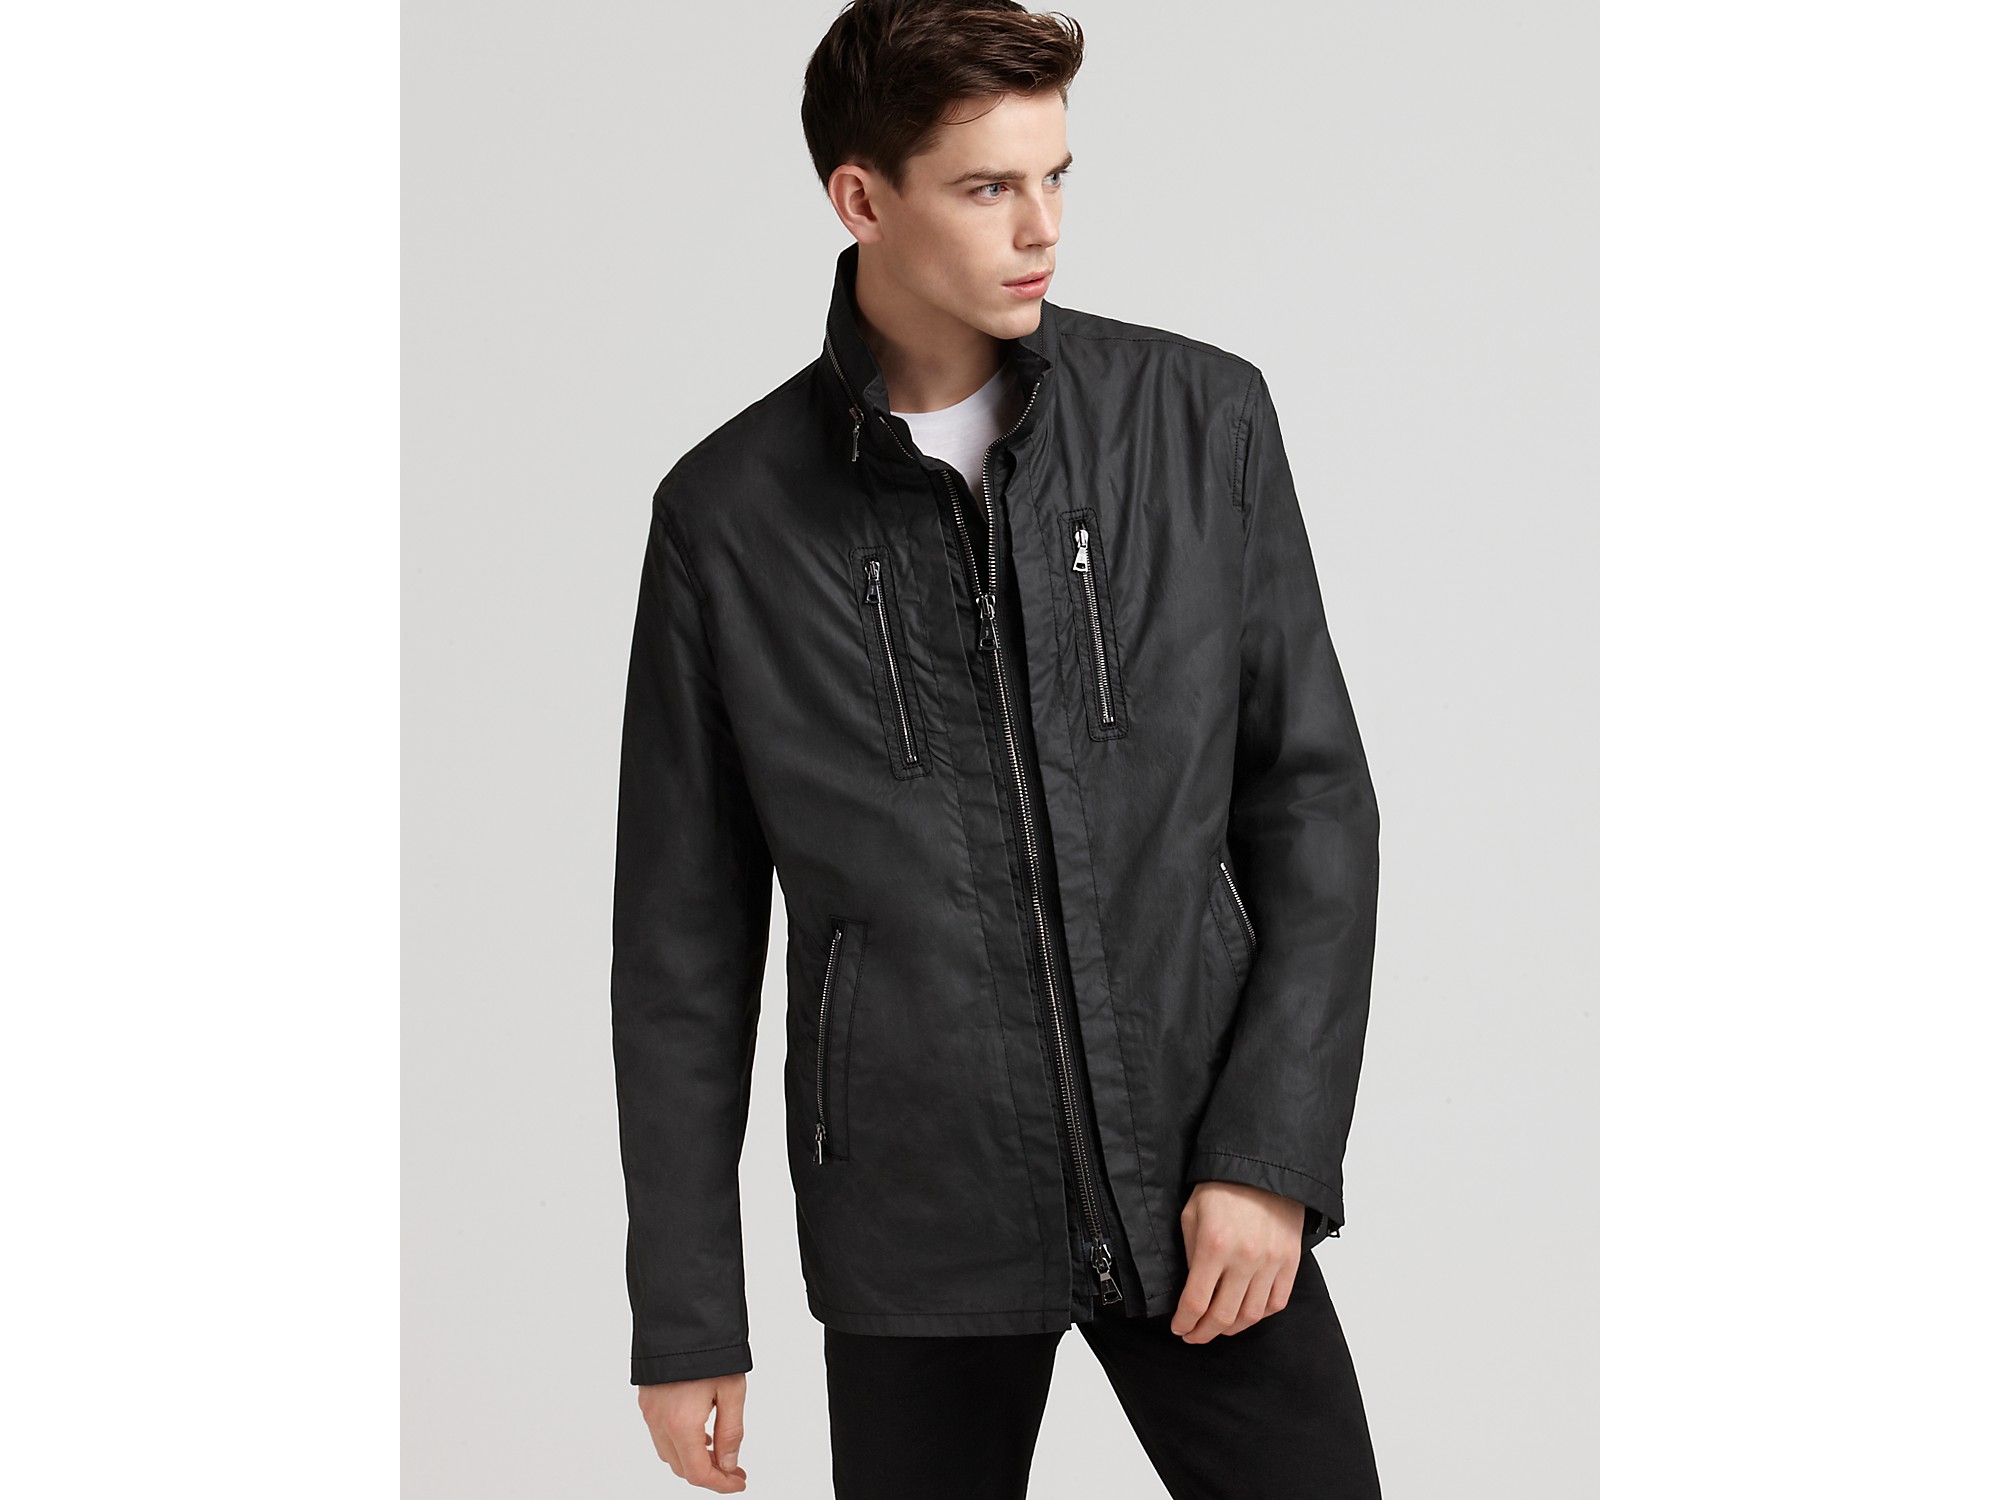 Lyst - John Varvatos Coated Cotton Zip Front Jacket in Black for Men